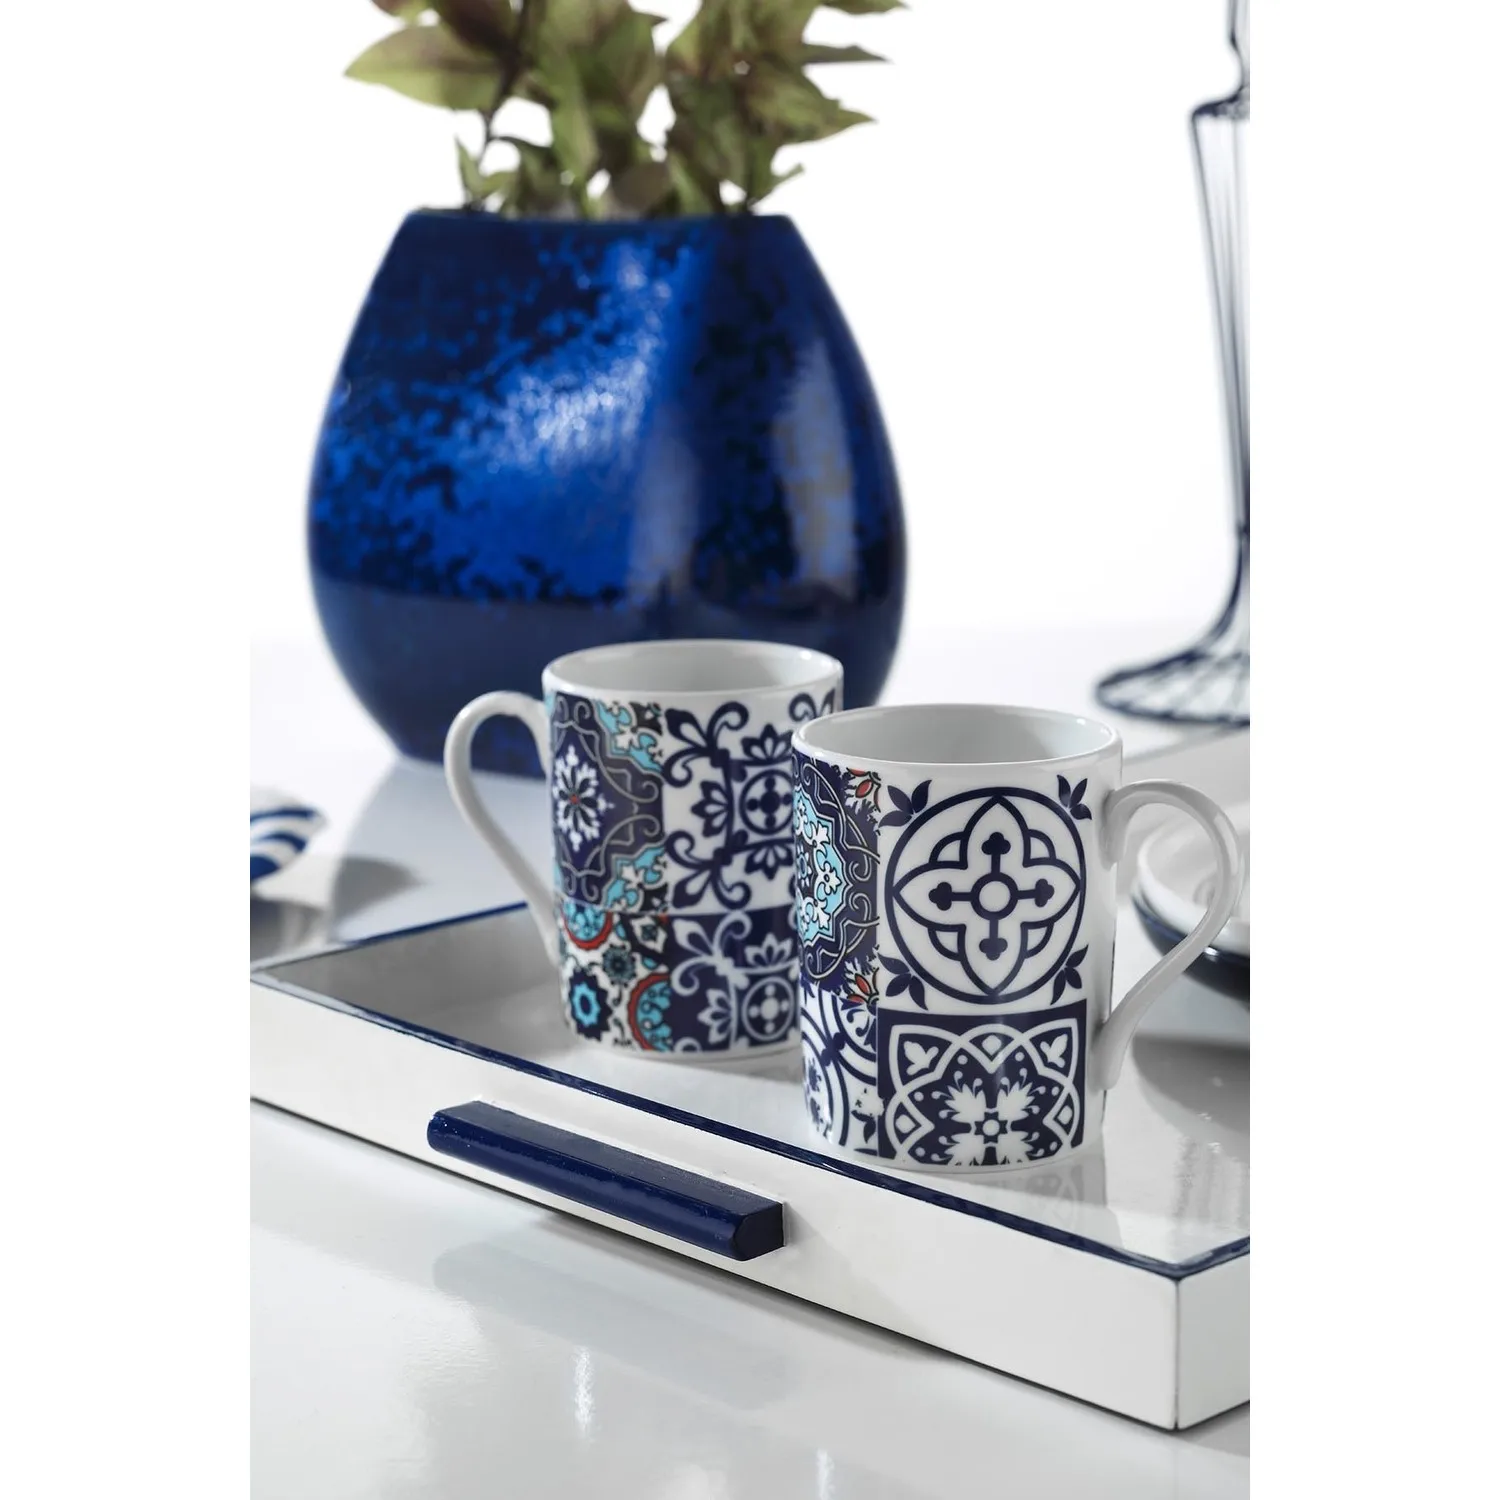 

Set of 2 Kutahya Has Porcelain Mug Glasses 9429 Anatolian red sky blue and white color patterned stylish design mug set beverage